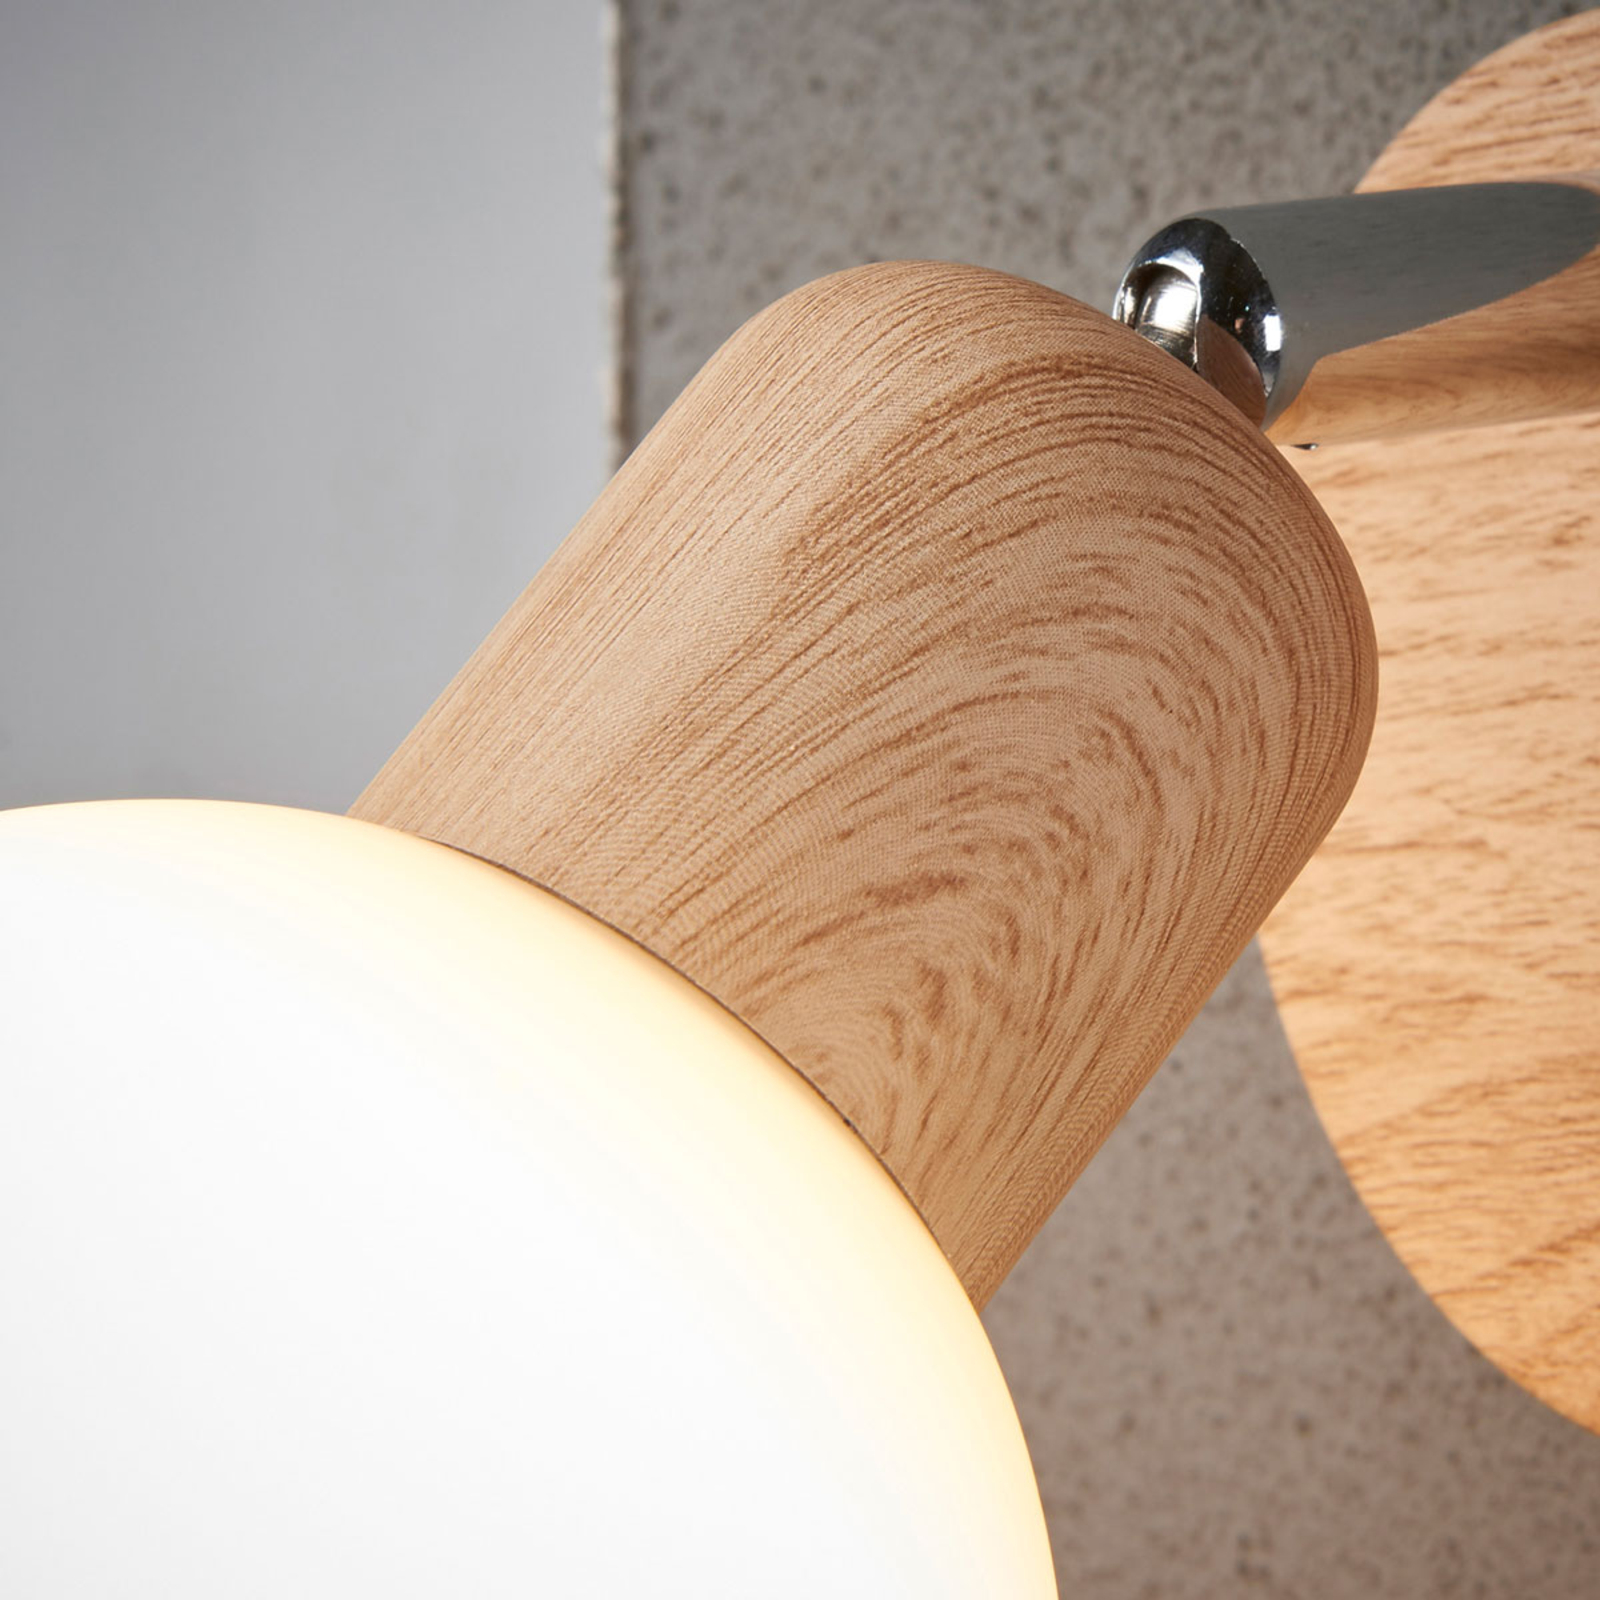 Svenka spotlight, one-bulb wood look